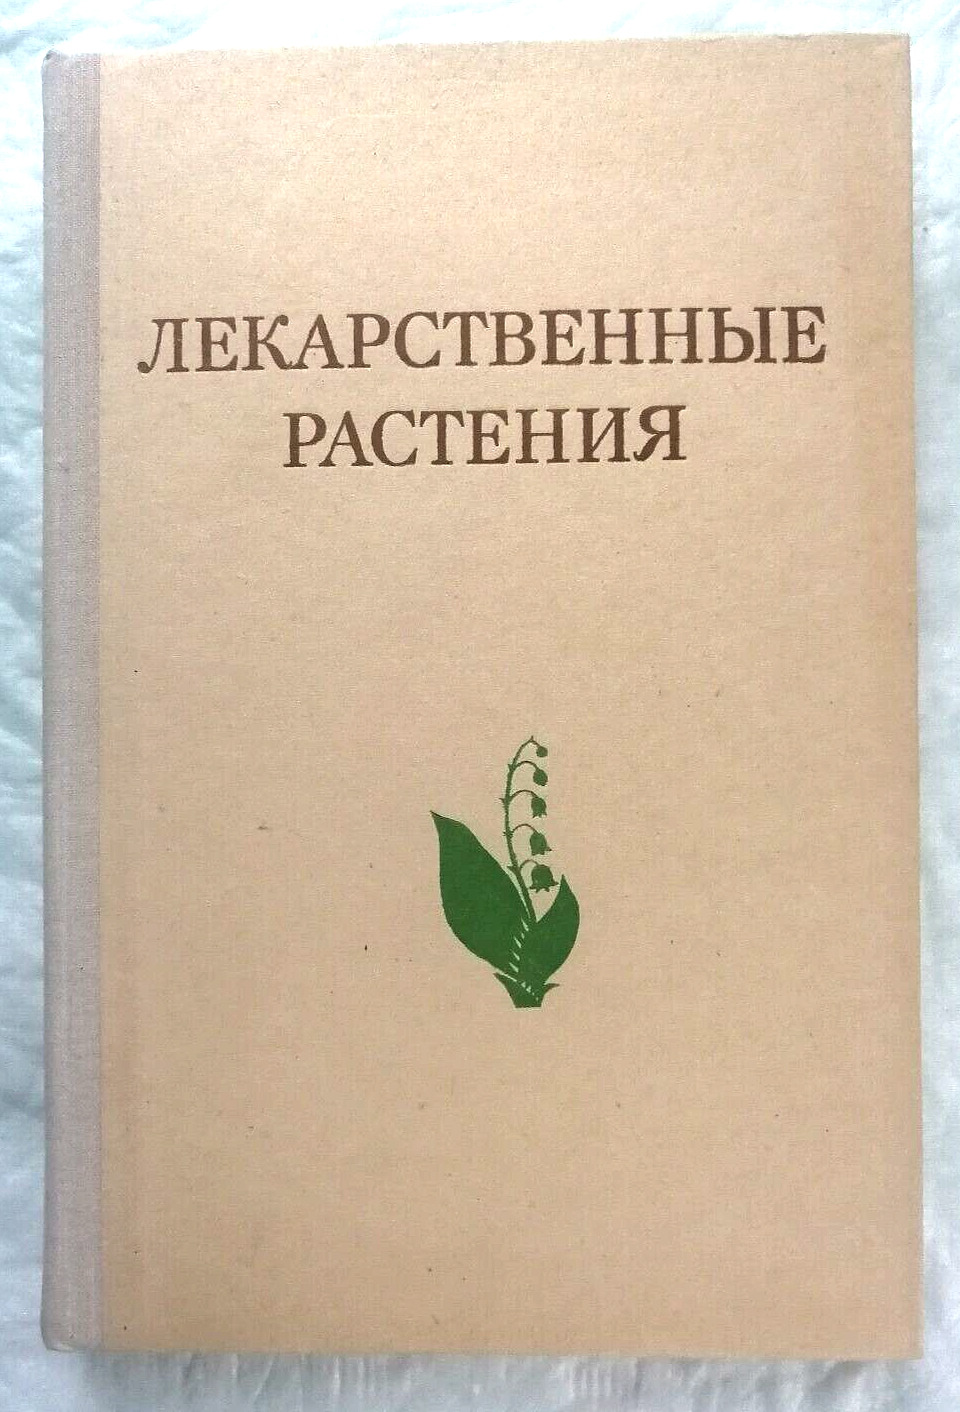 1975 Medicinal plants, description of recipes